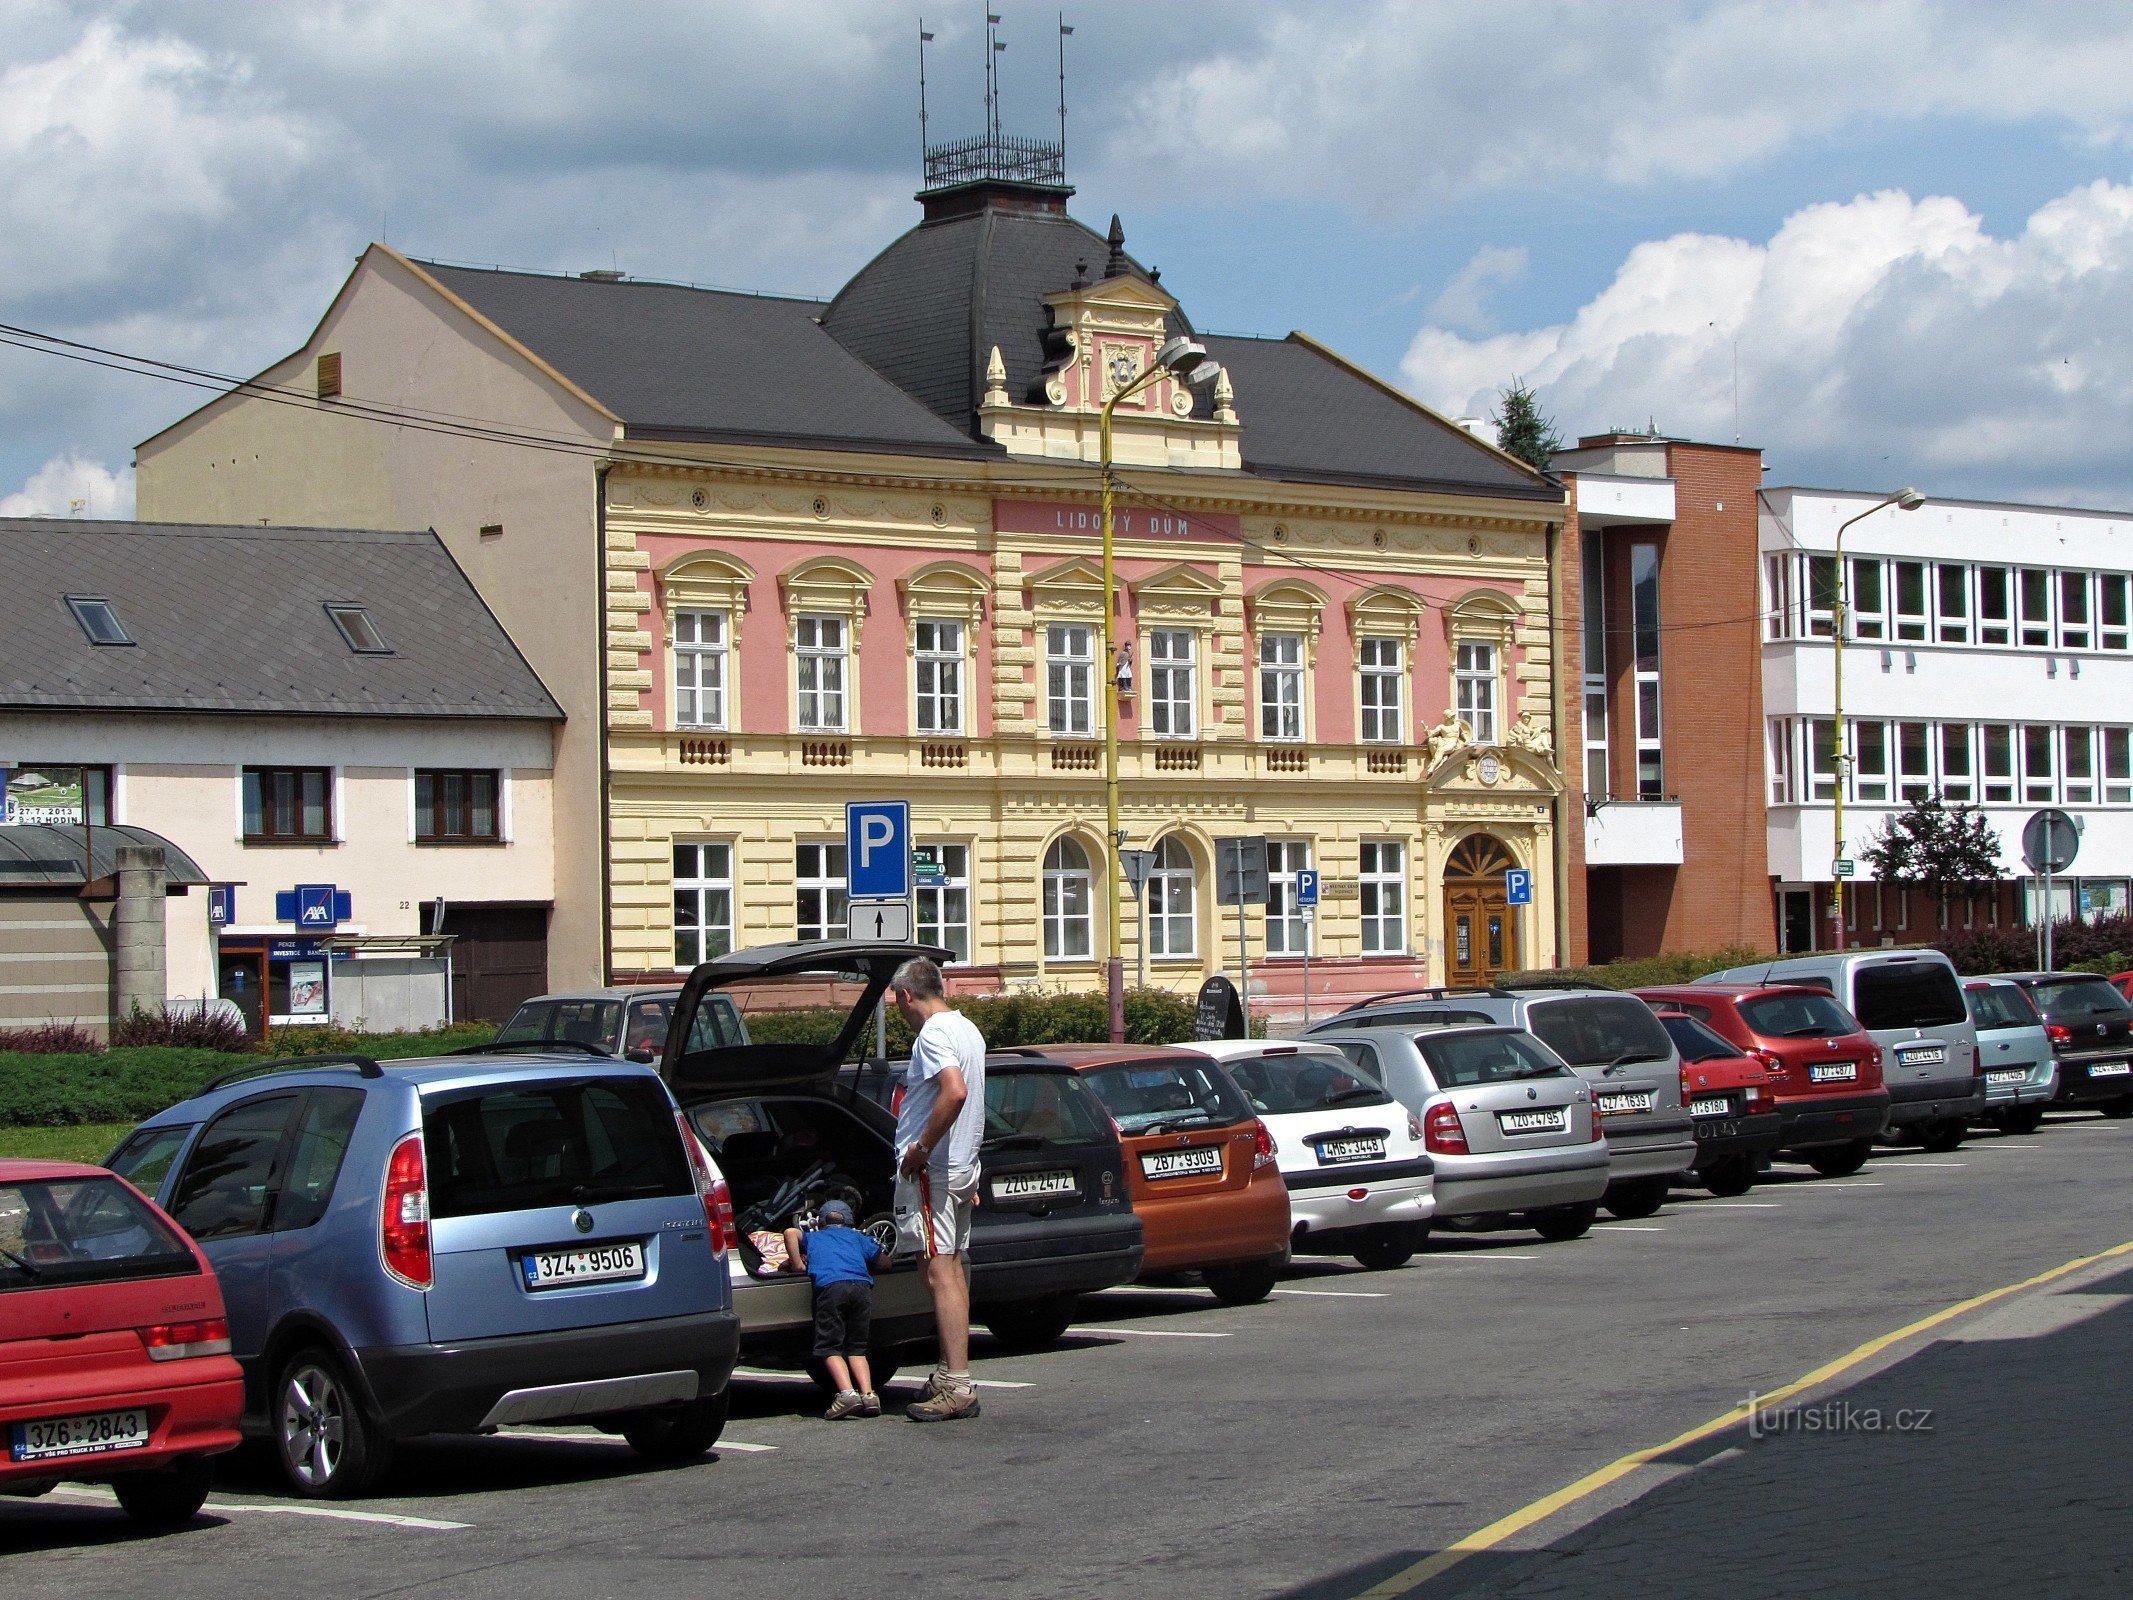 Masaryk Square